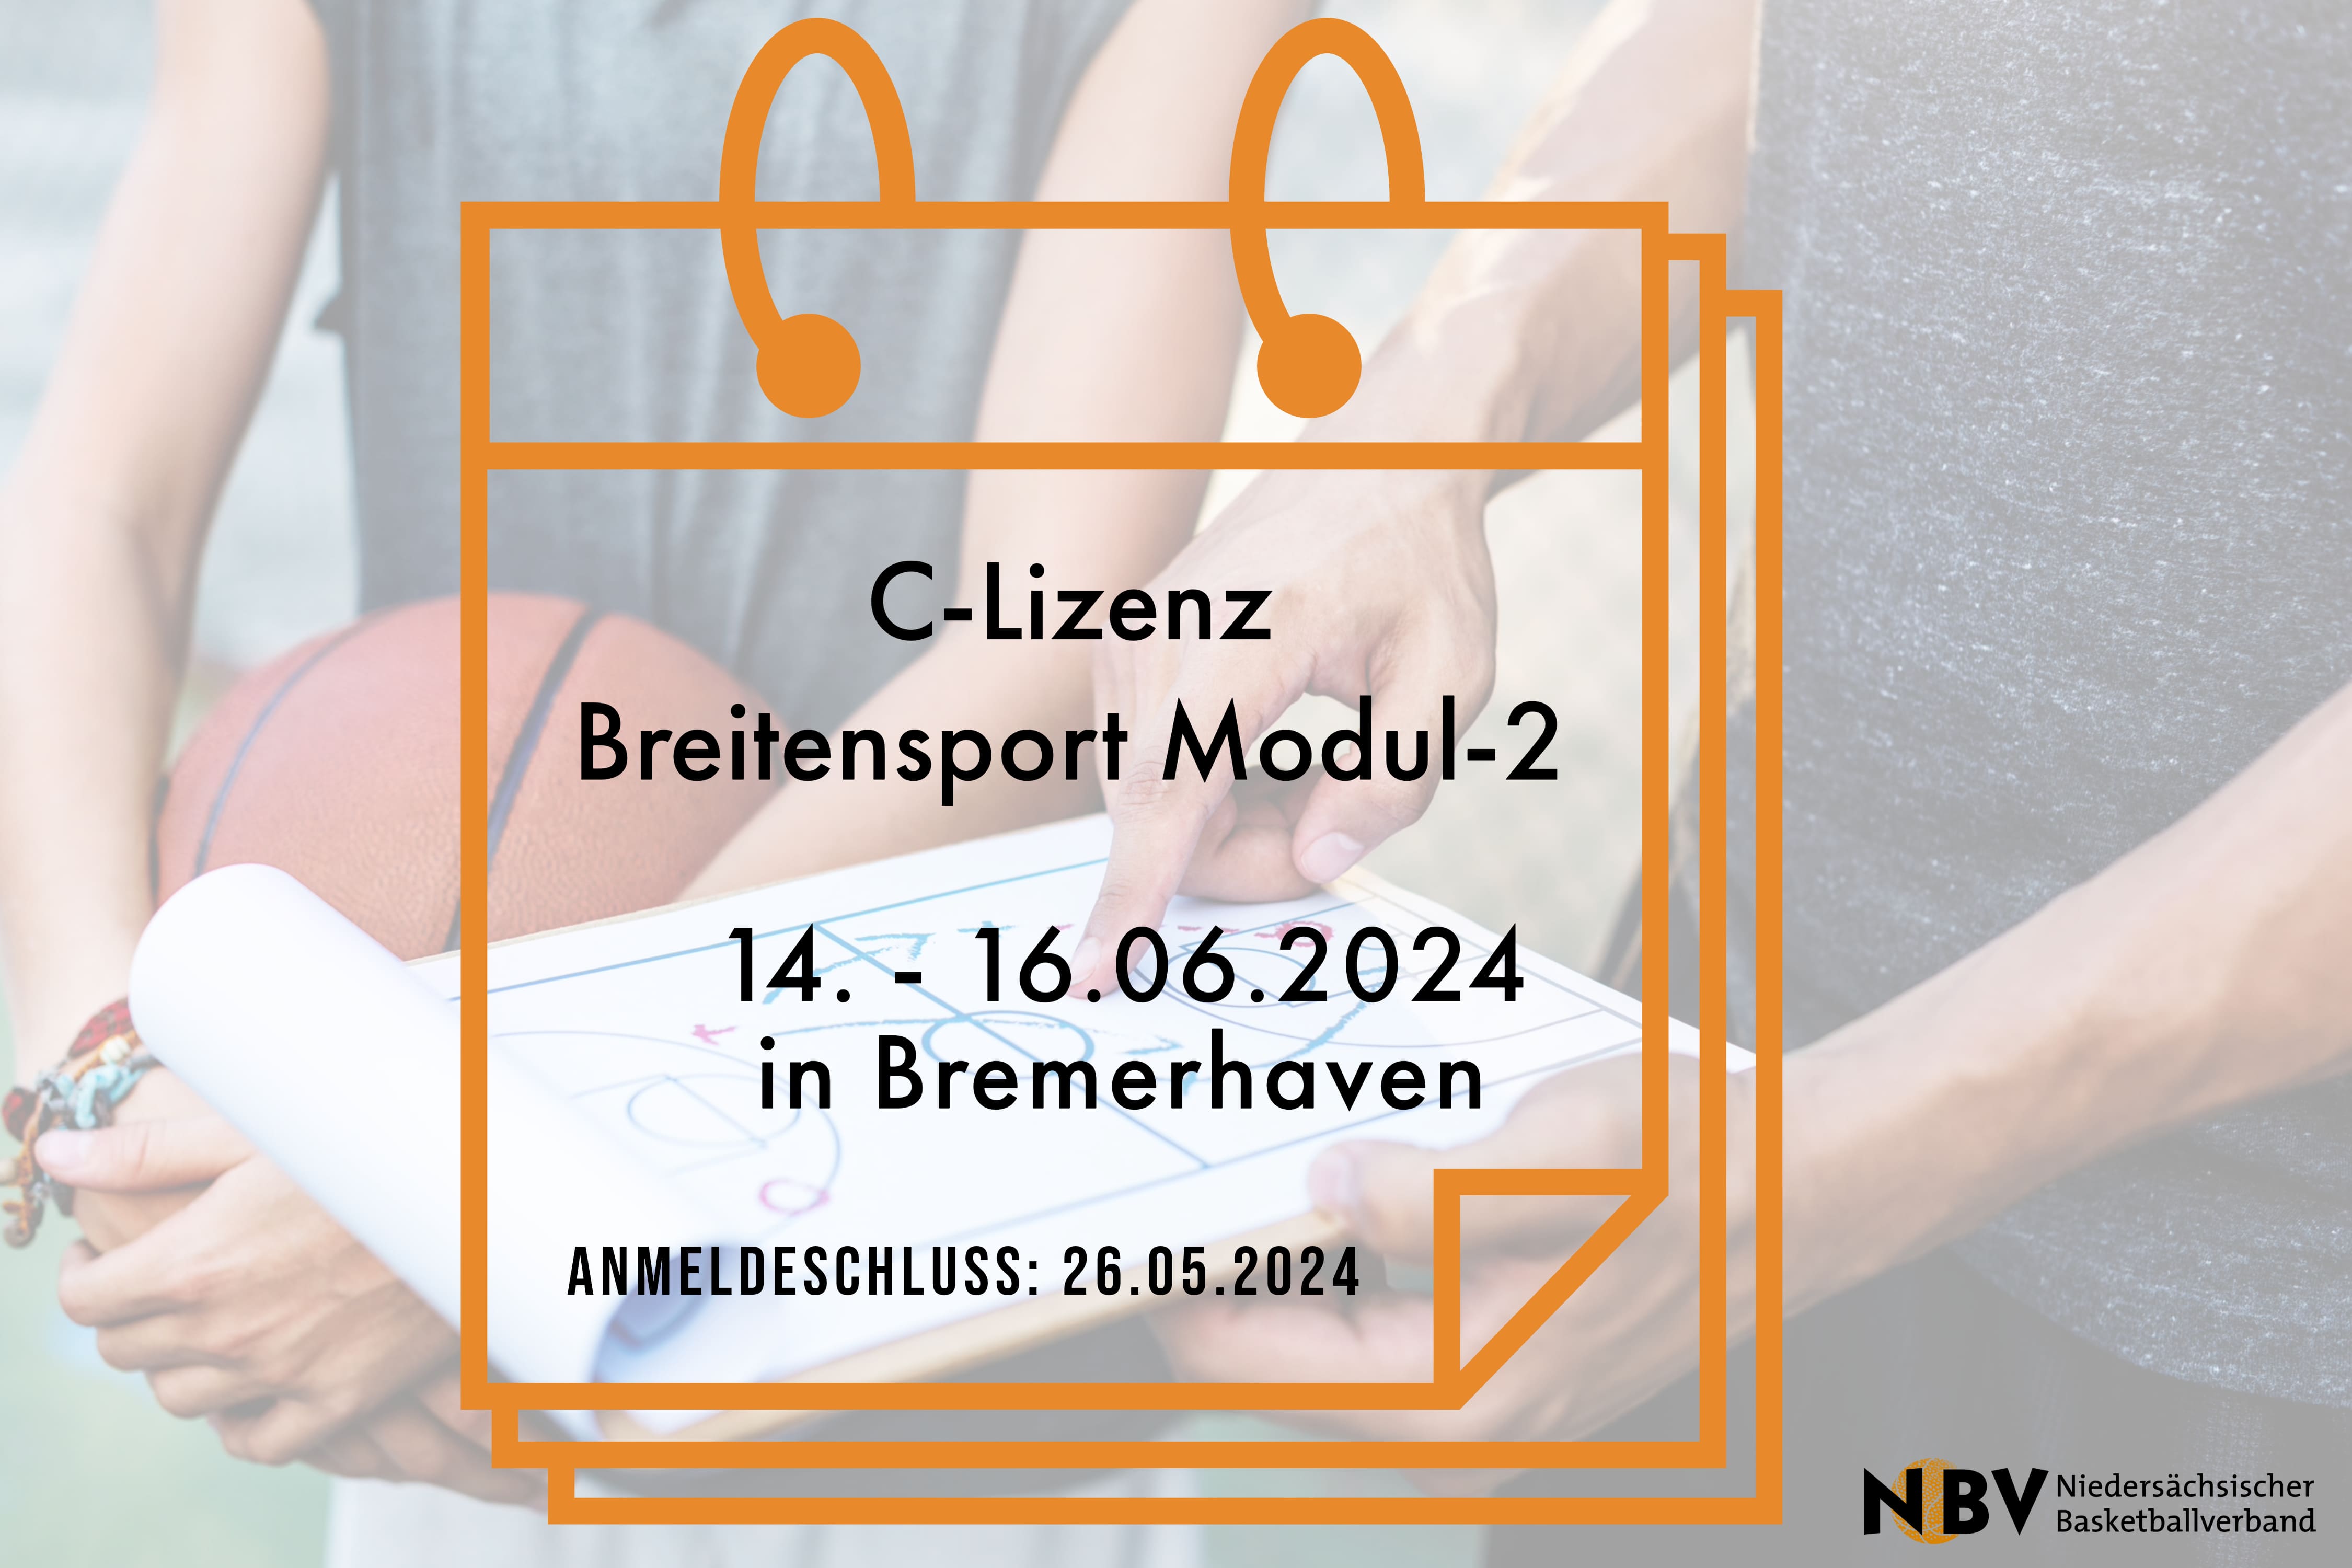 C-Lizenz Breitensport Modul-2 (Bremerhaven)